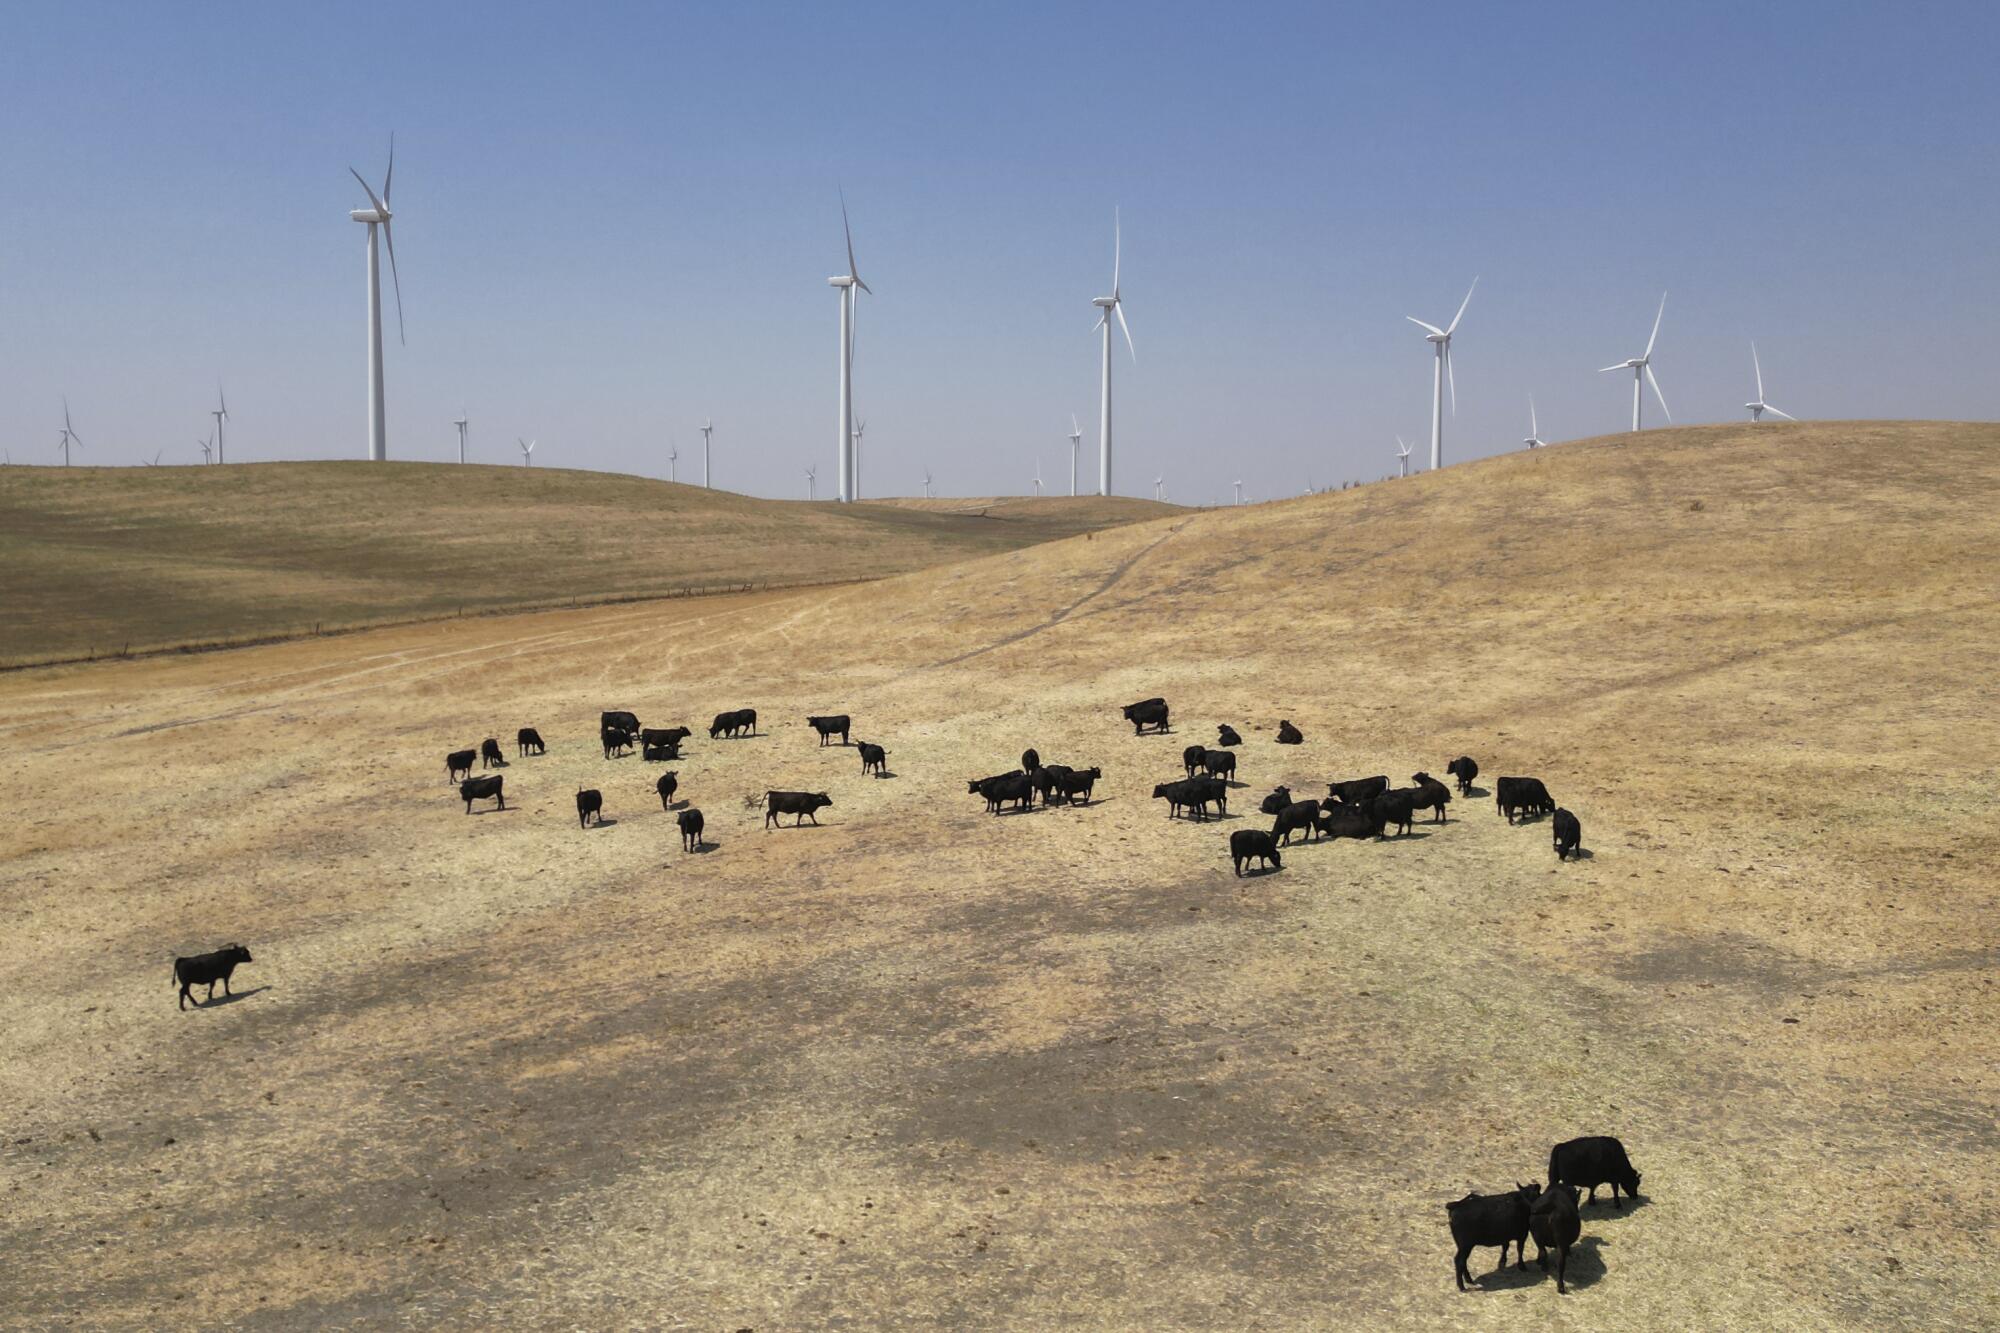 Cattle graze on a hillside near wind turbines